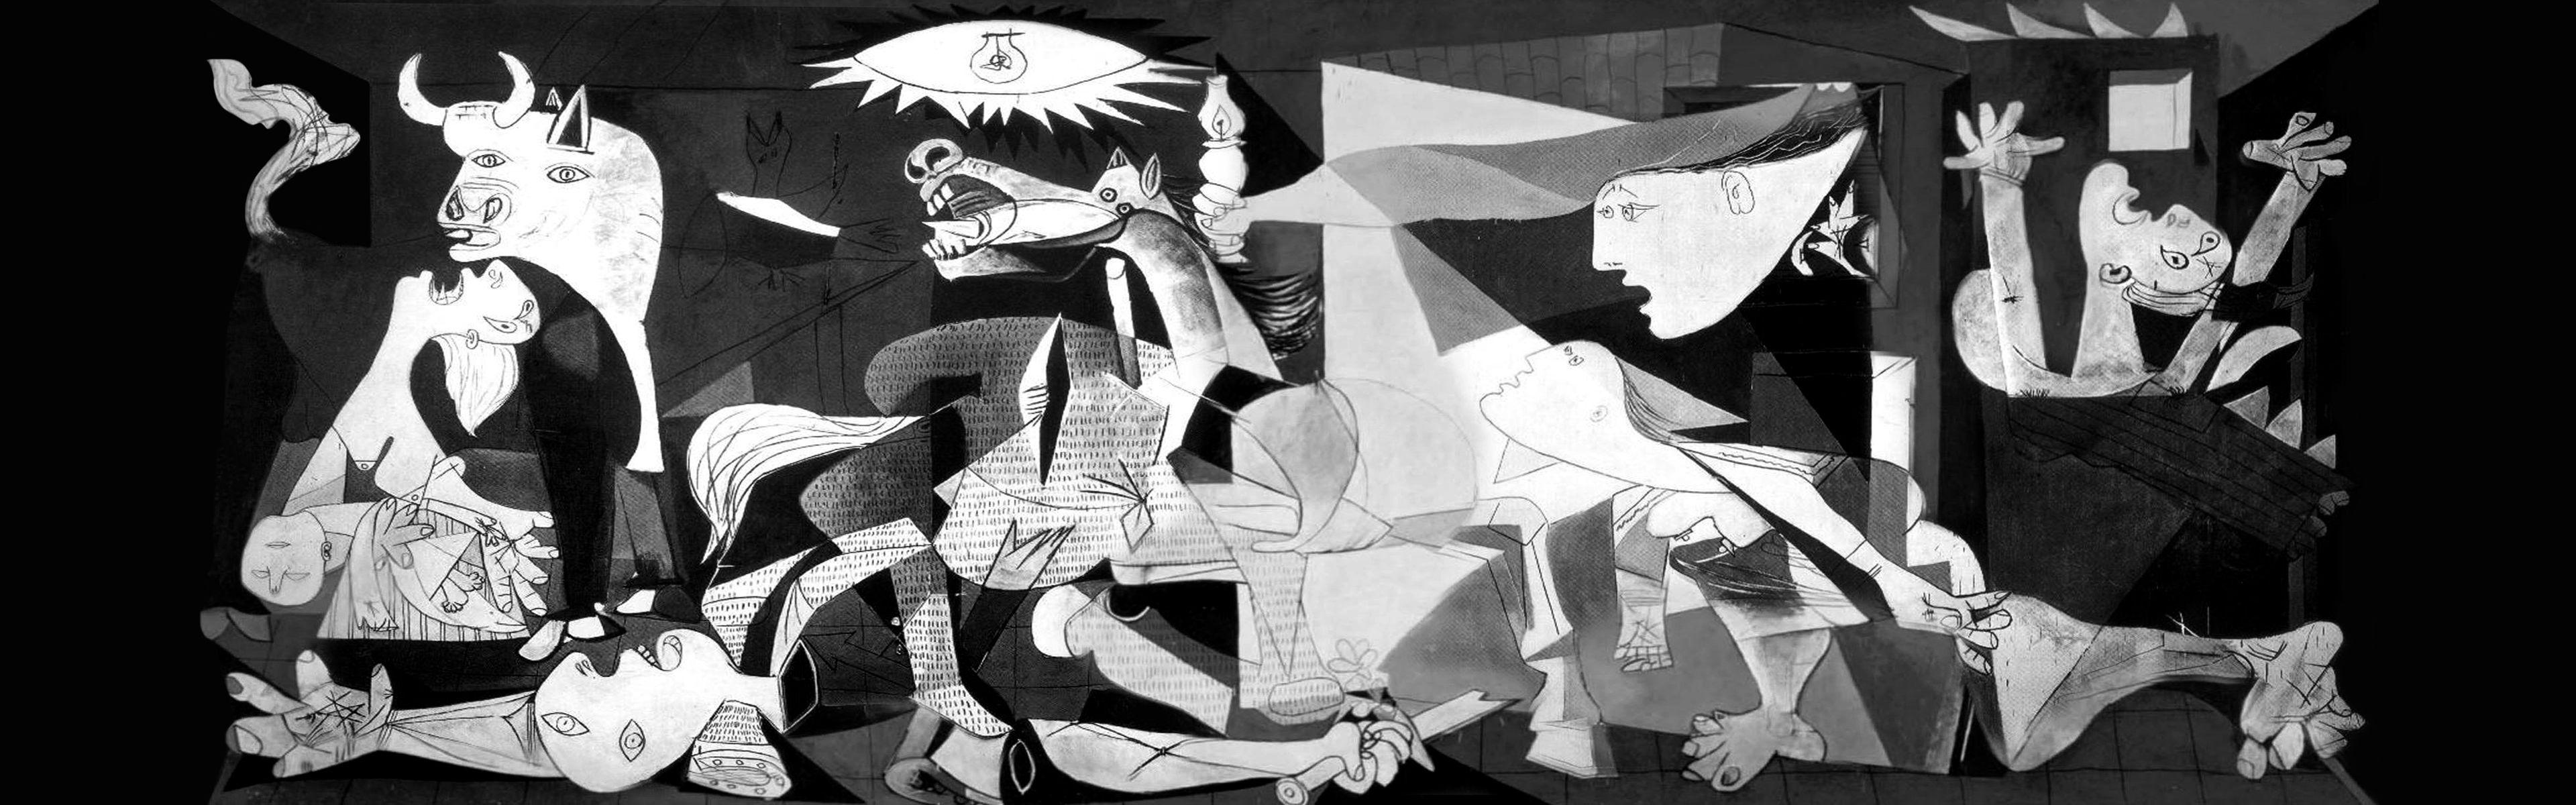 Pablo Picasso, Guernica Wallpaper / WallpaperJam.com